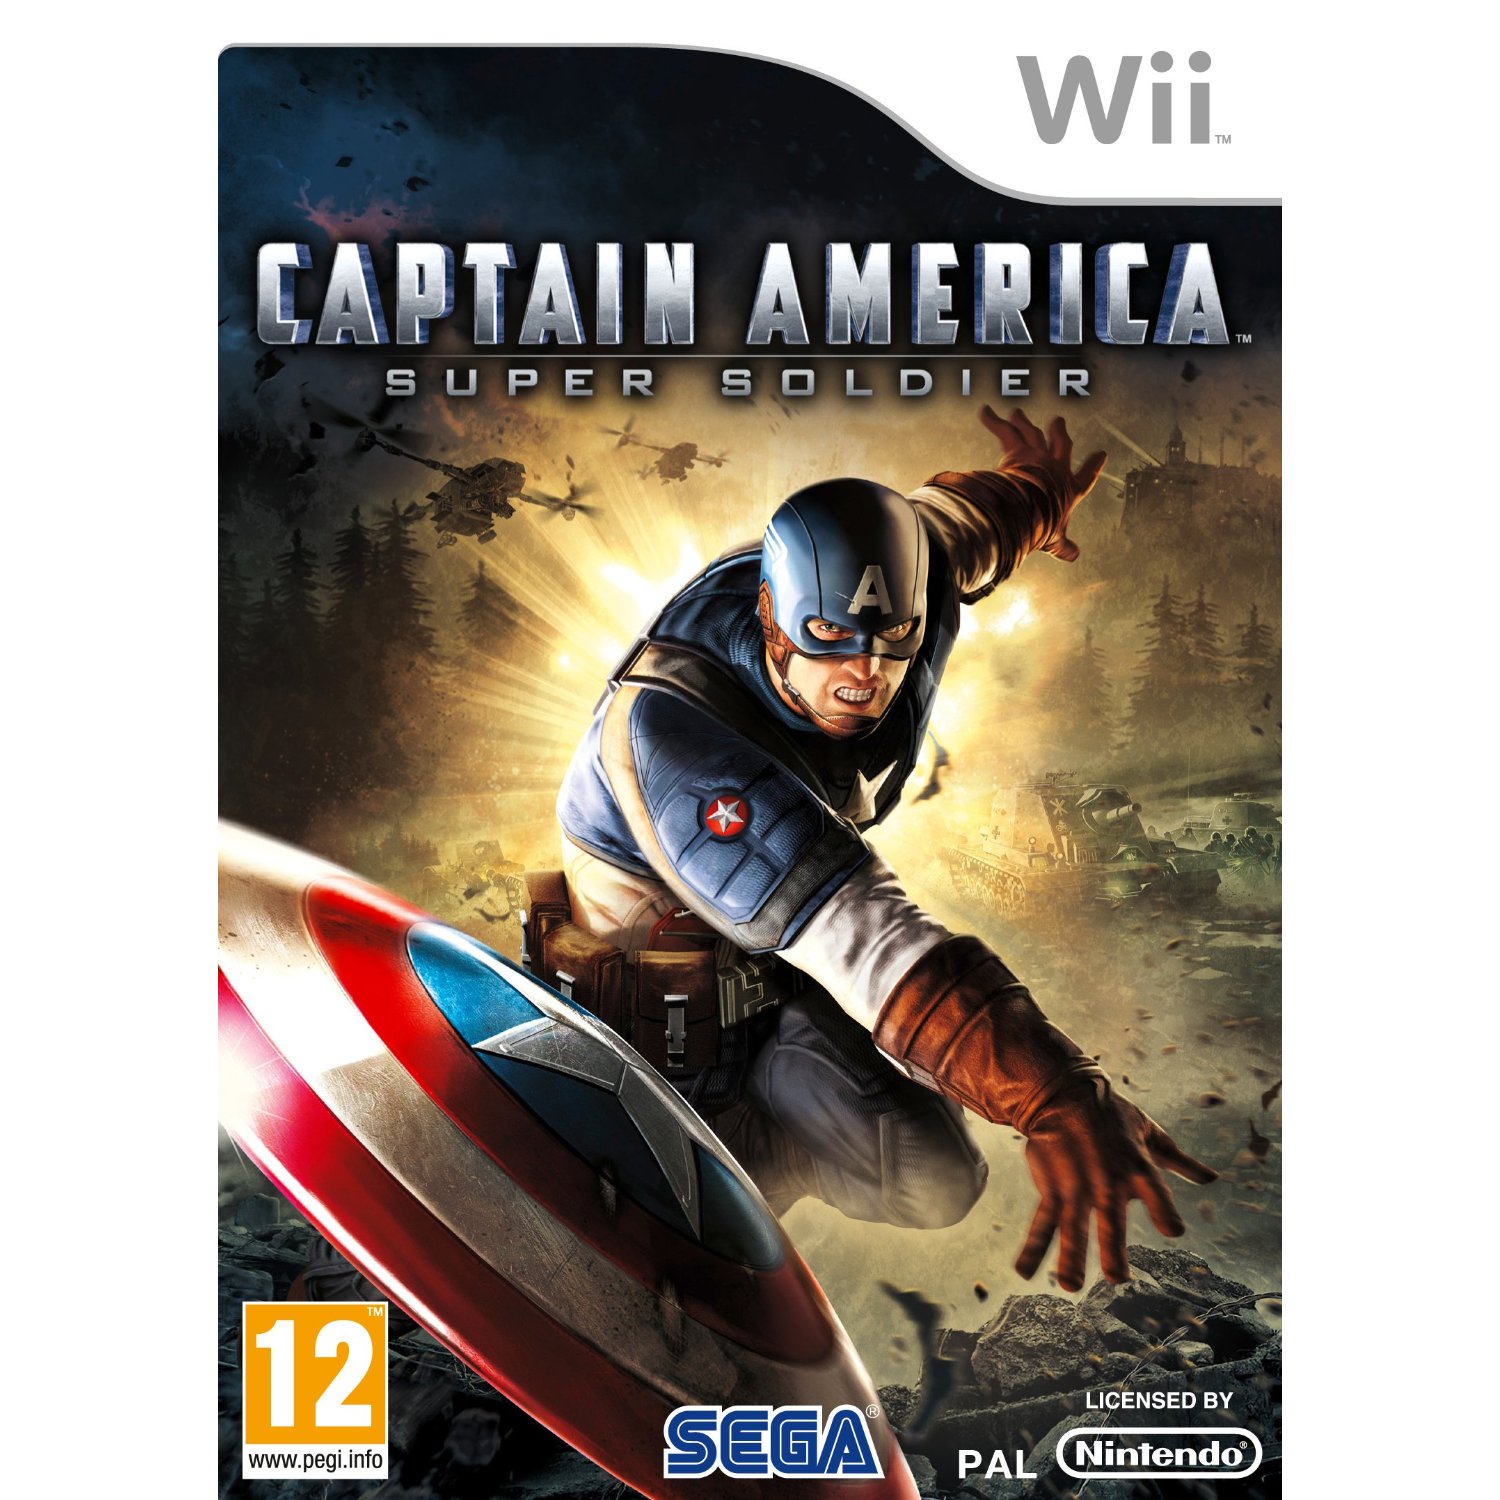 SEGA Captain America Super Soldier Wii